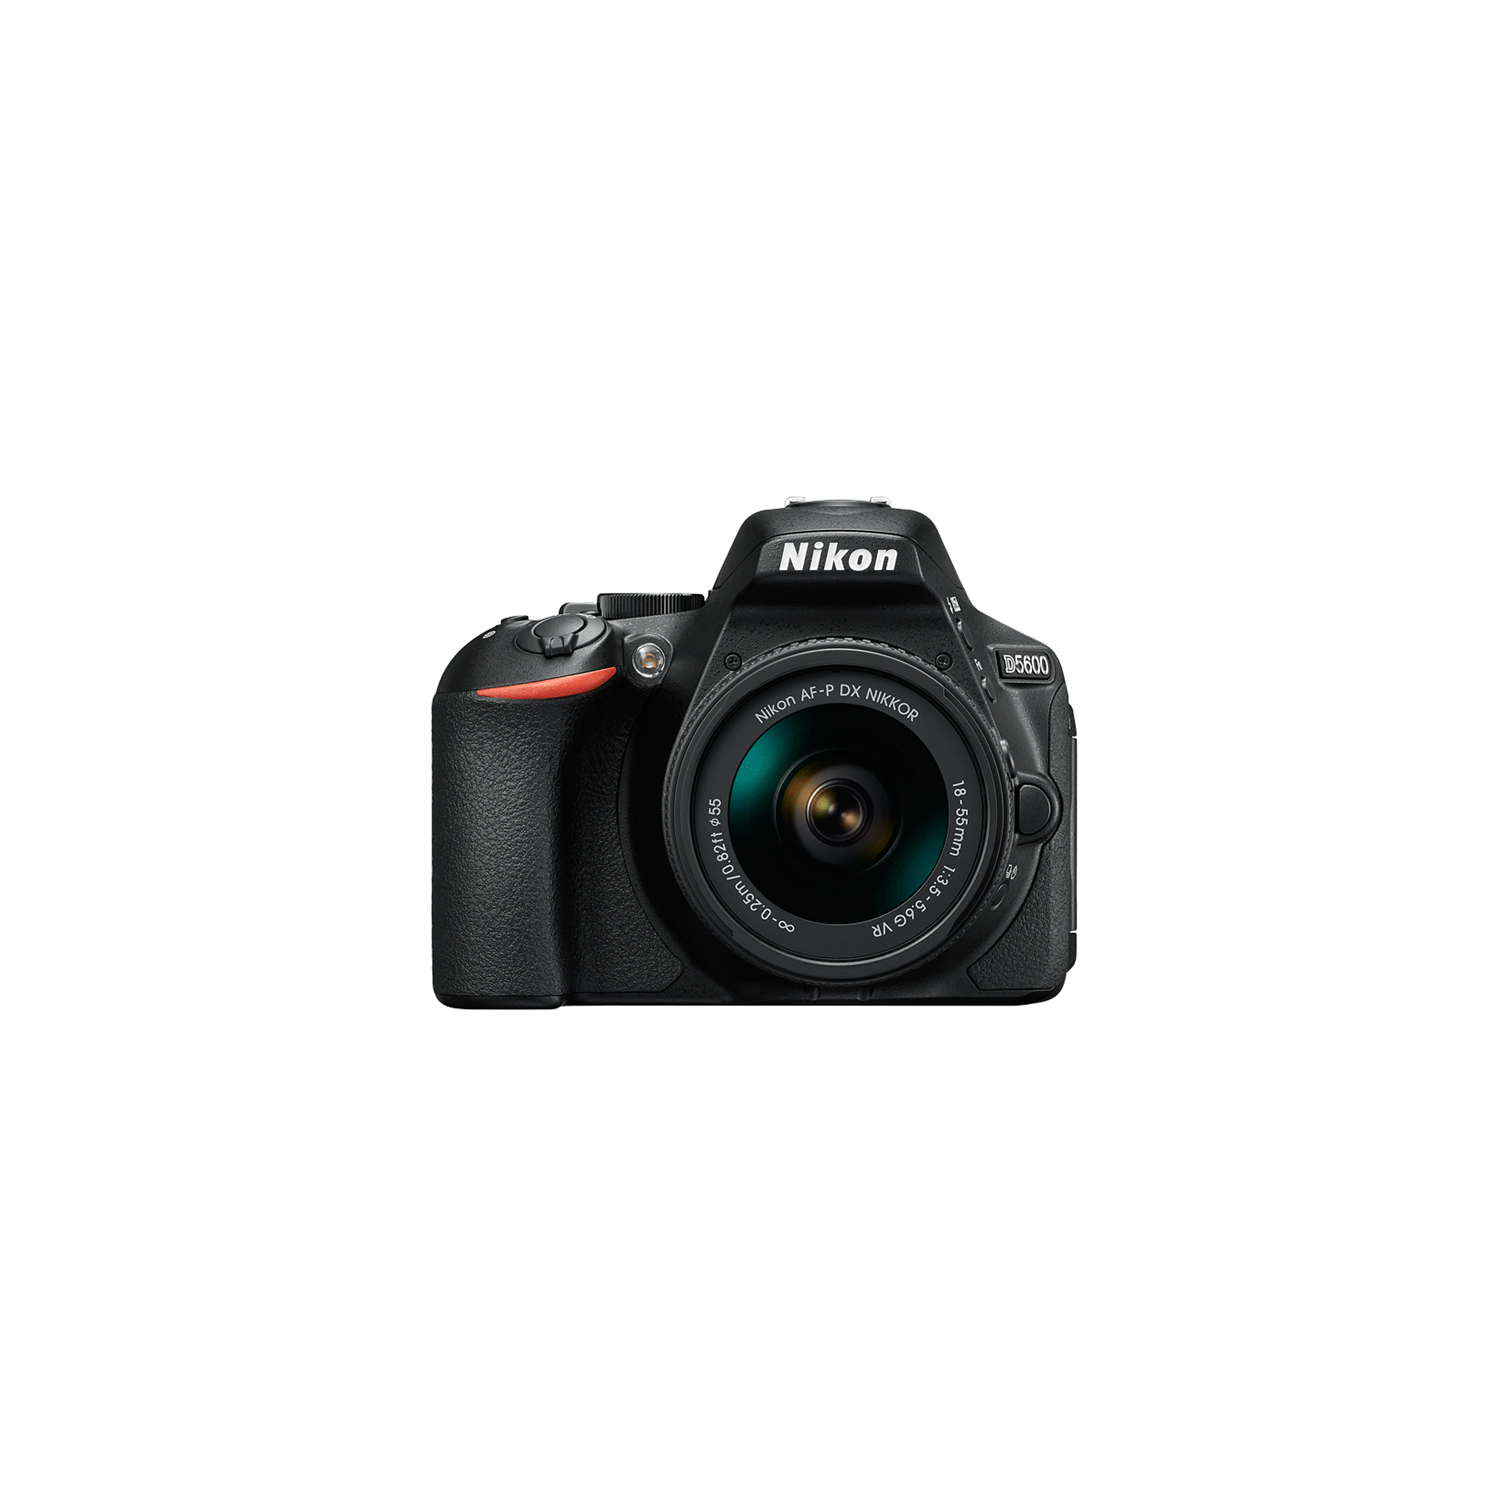 Nikon D5600 24.2 MP SLR - Black - AF-P DX 18-55mm VR Lens - US Version w/ Seller Warranty